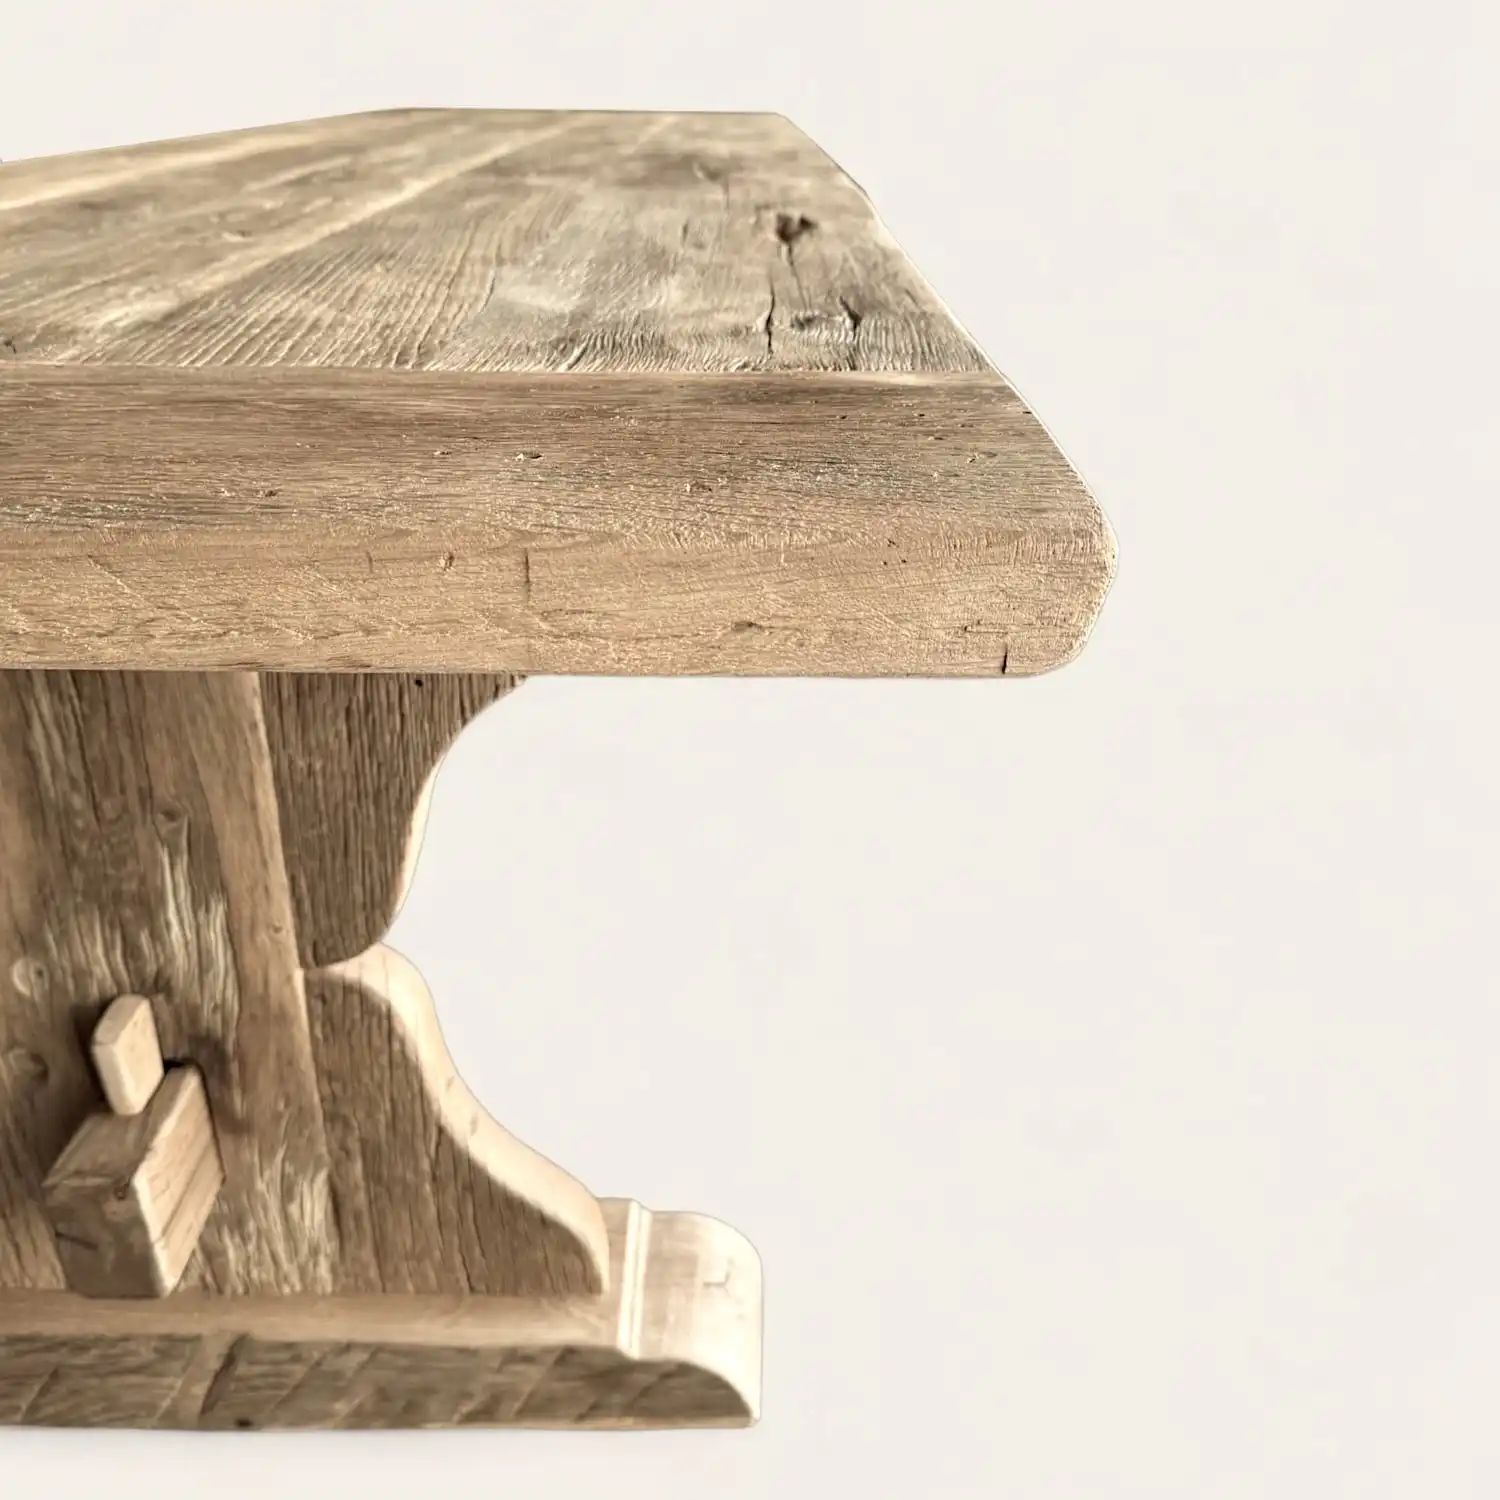  Une vieille table en bois avec un plateau en bois. 